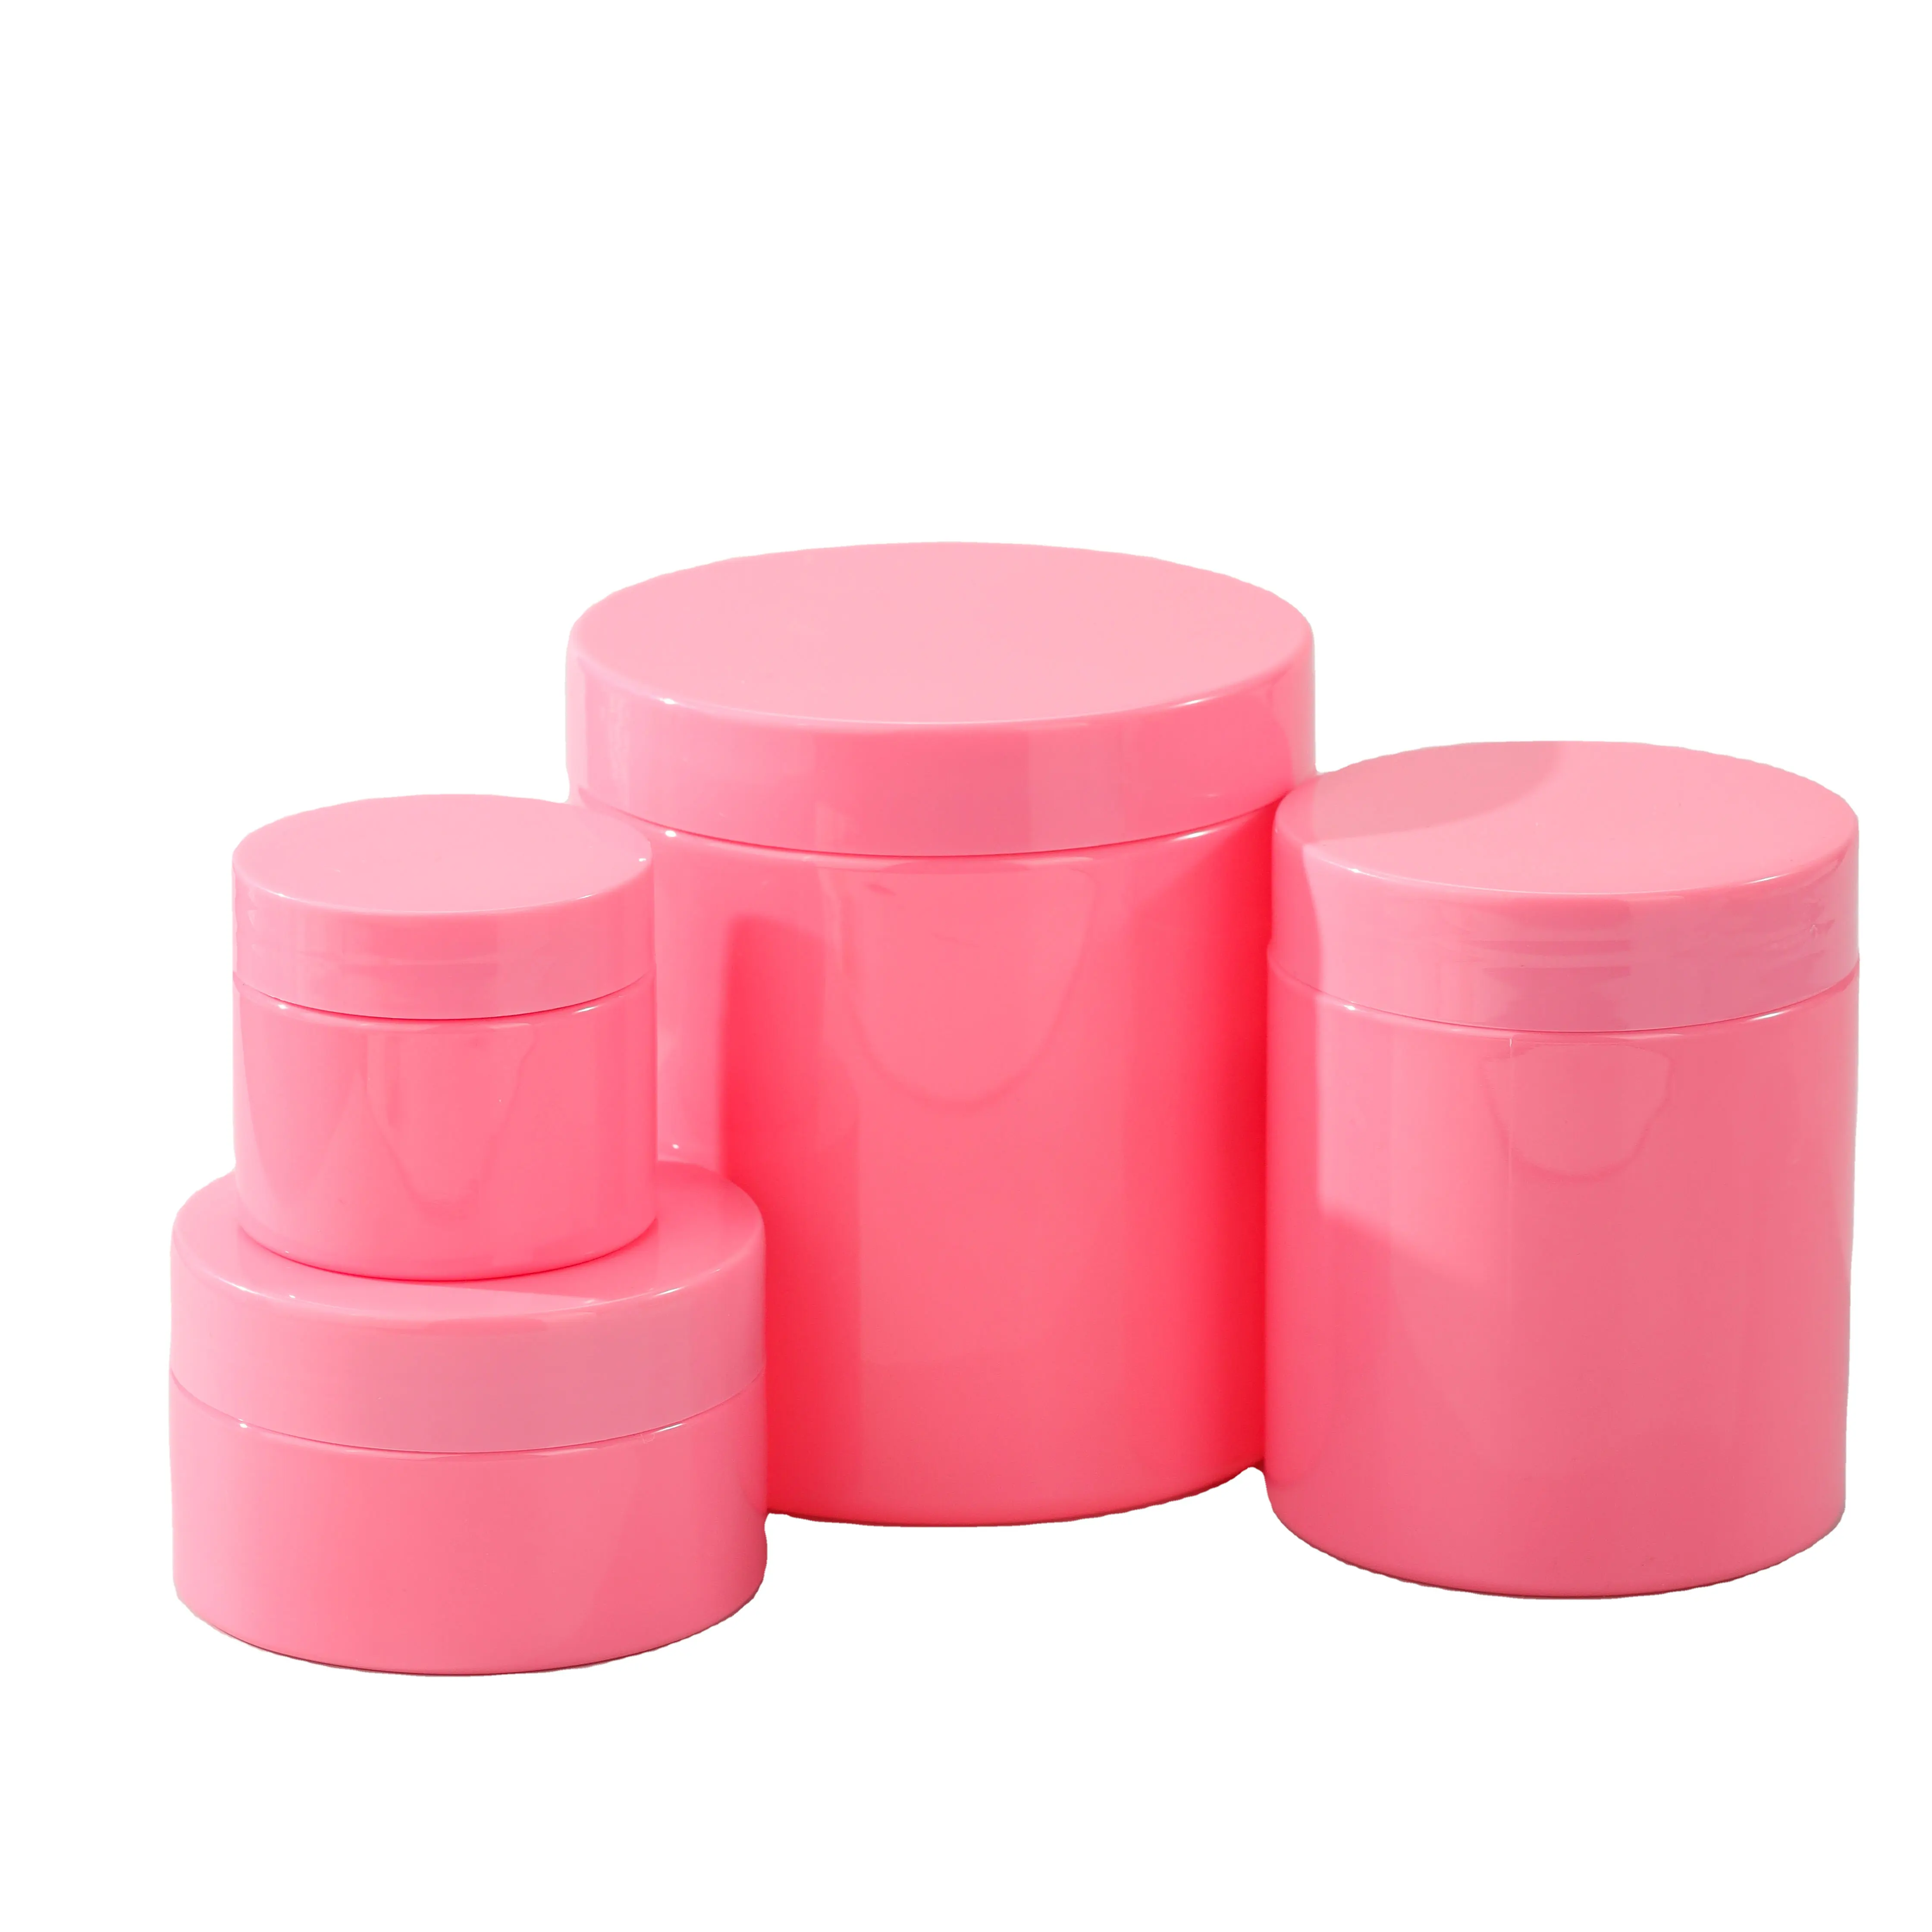 Pots d'emballage cosmétique en plastique rose en gros 200 ml avec couvercle de couleur rose